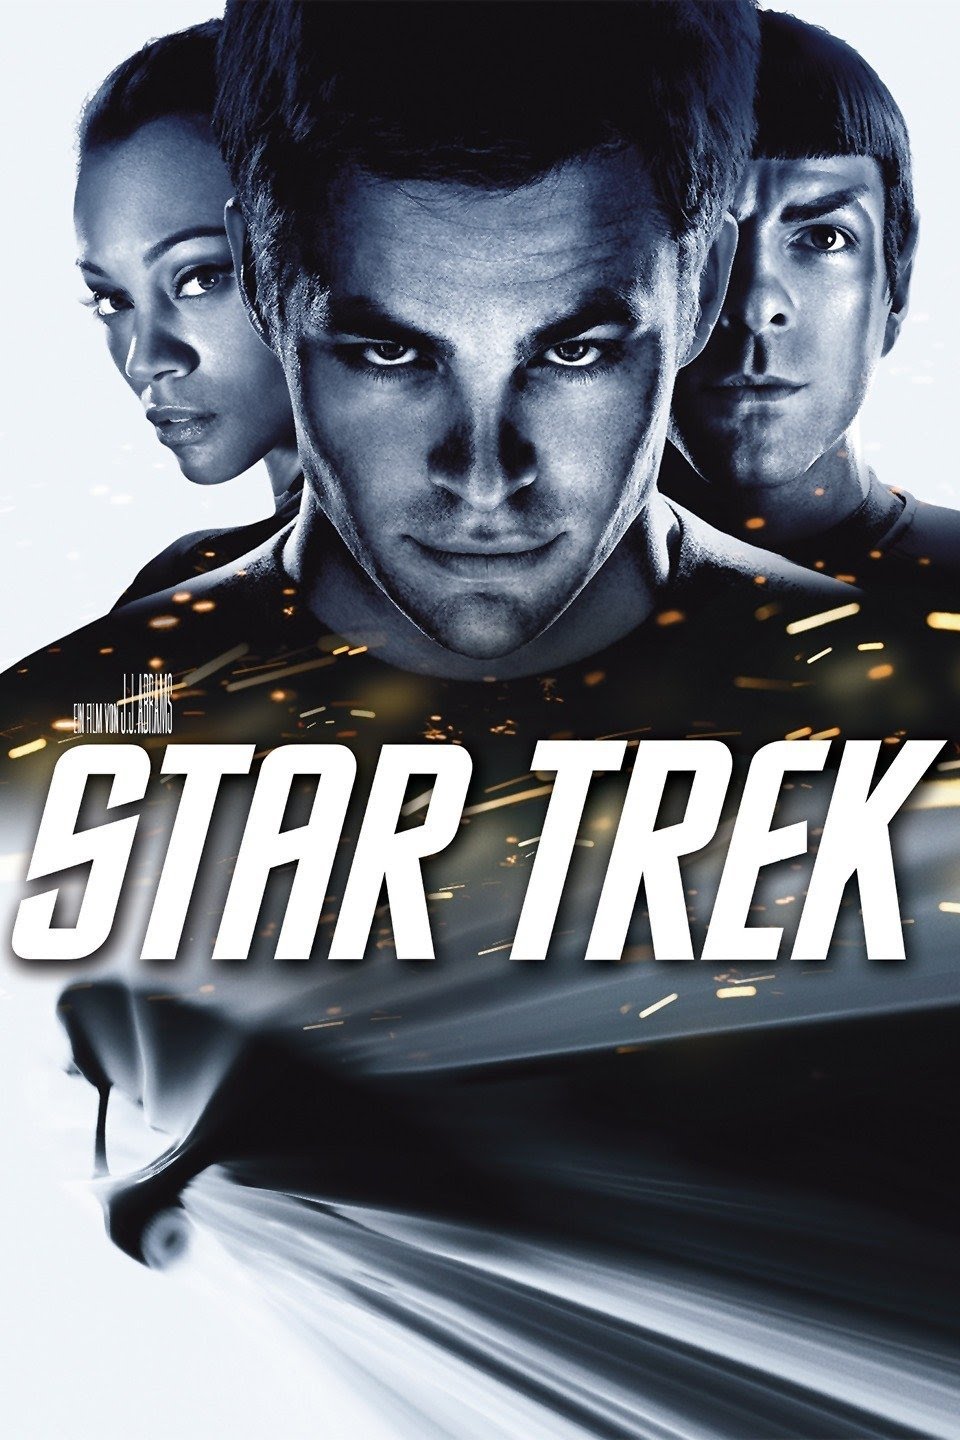 Star Trek (2009) Vudu HD redemption only